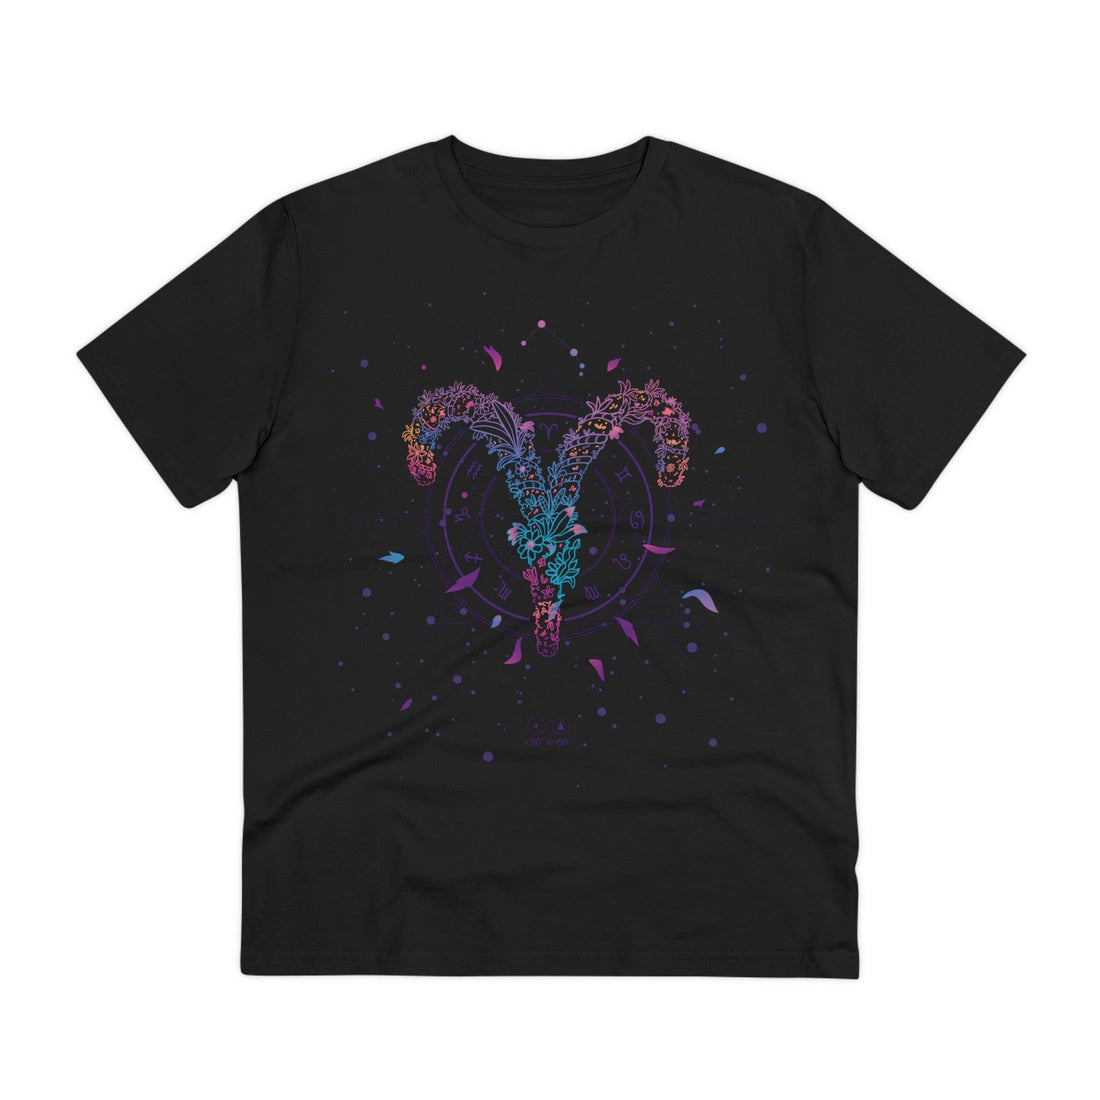 Printify T-Shirt Black / 2XS Aries Zodiac - Floral Zodiac Signs - Front Design